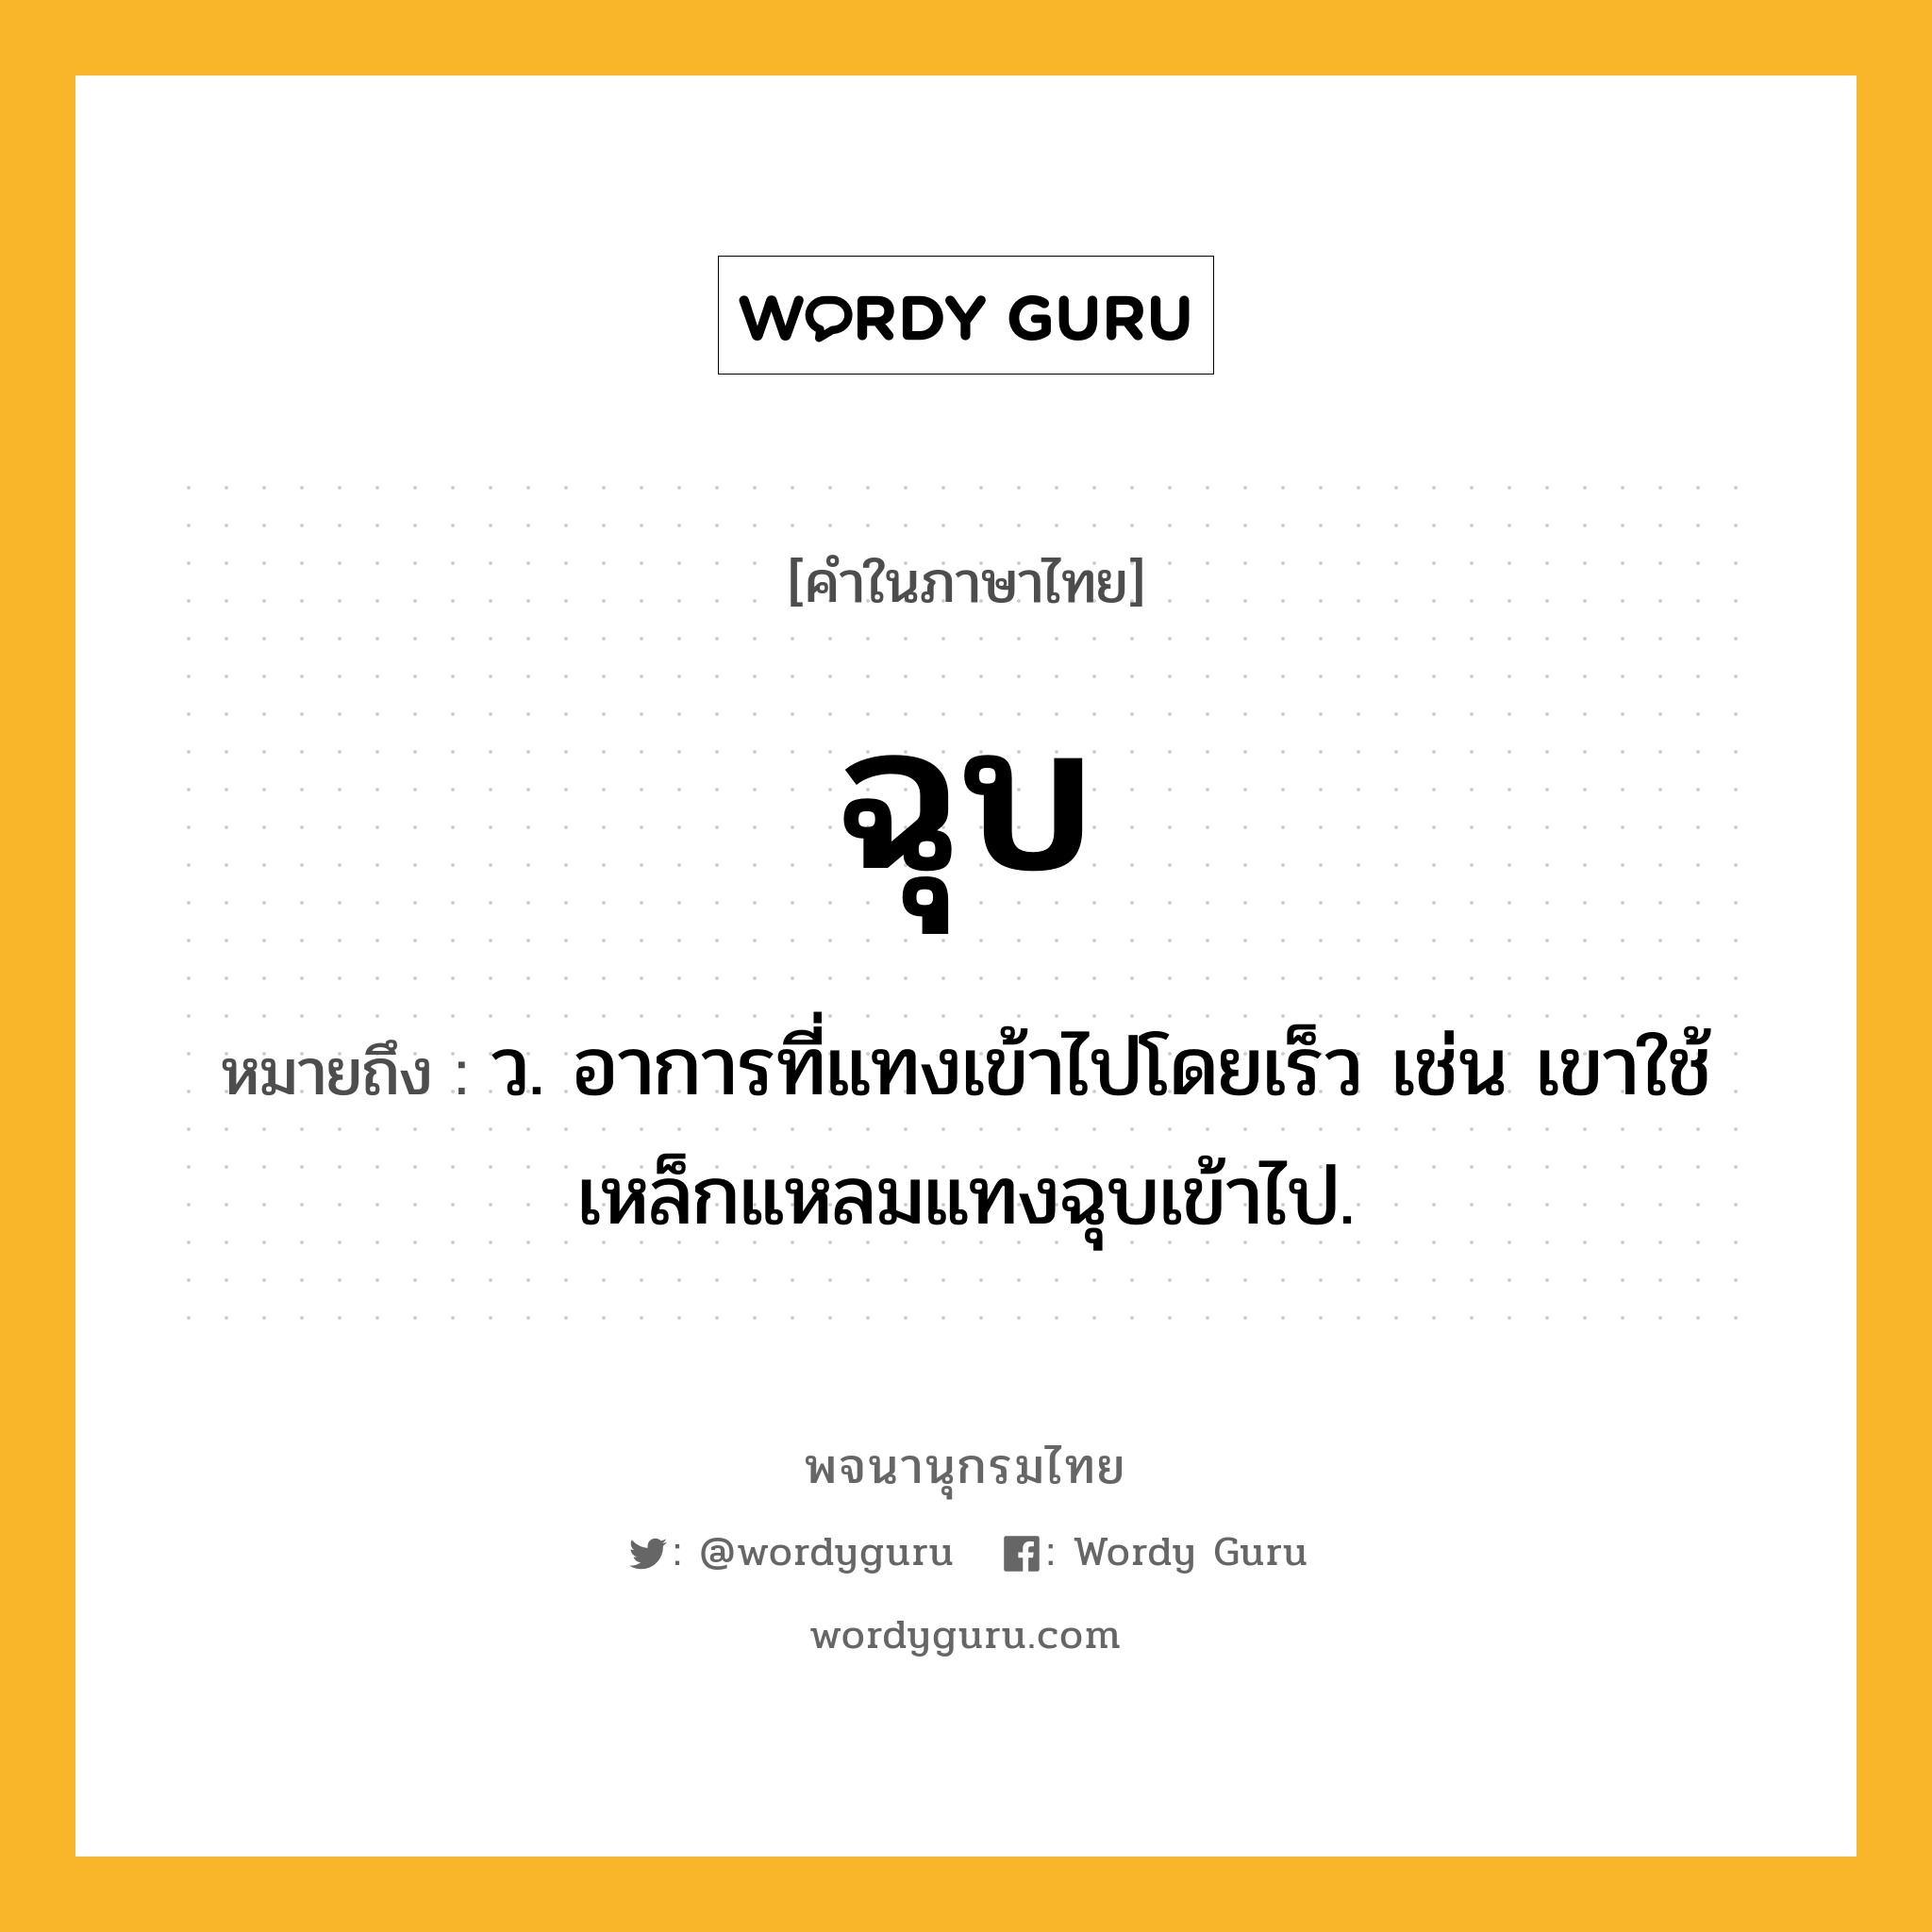 ฉุบ ความหมาย หมายถึงอะไร?, คำในภาษาไทย ฉุบ หมายถึง ว. อาการที่แทงเข้าไปโดยเร็ว เช่น เขาใช้เหล็กแหลมแทงฉุบเข้าไป.